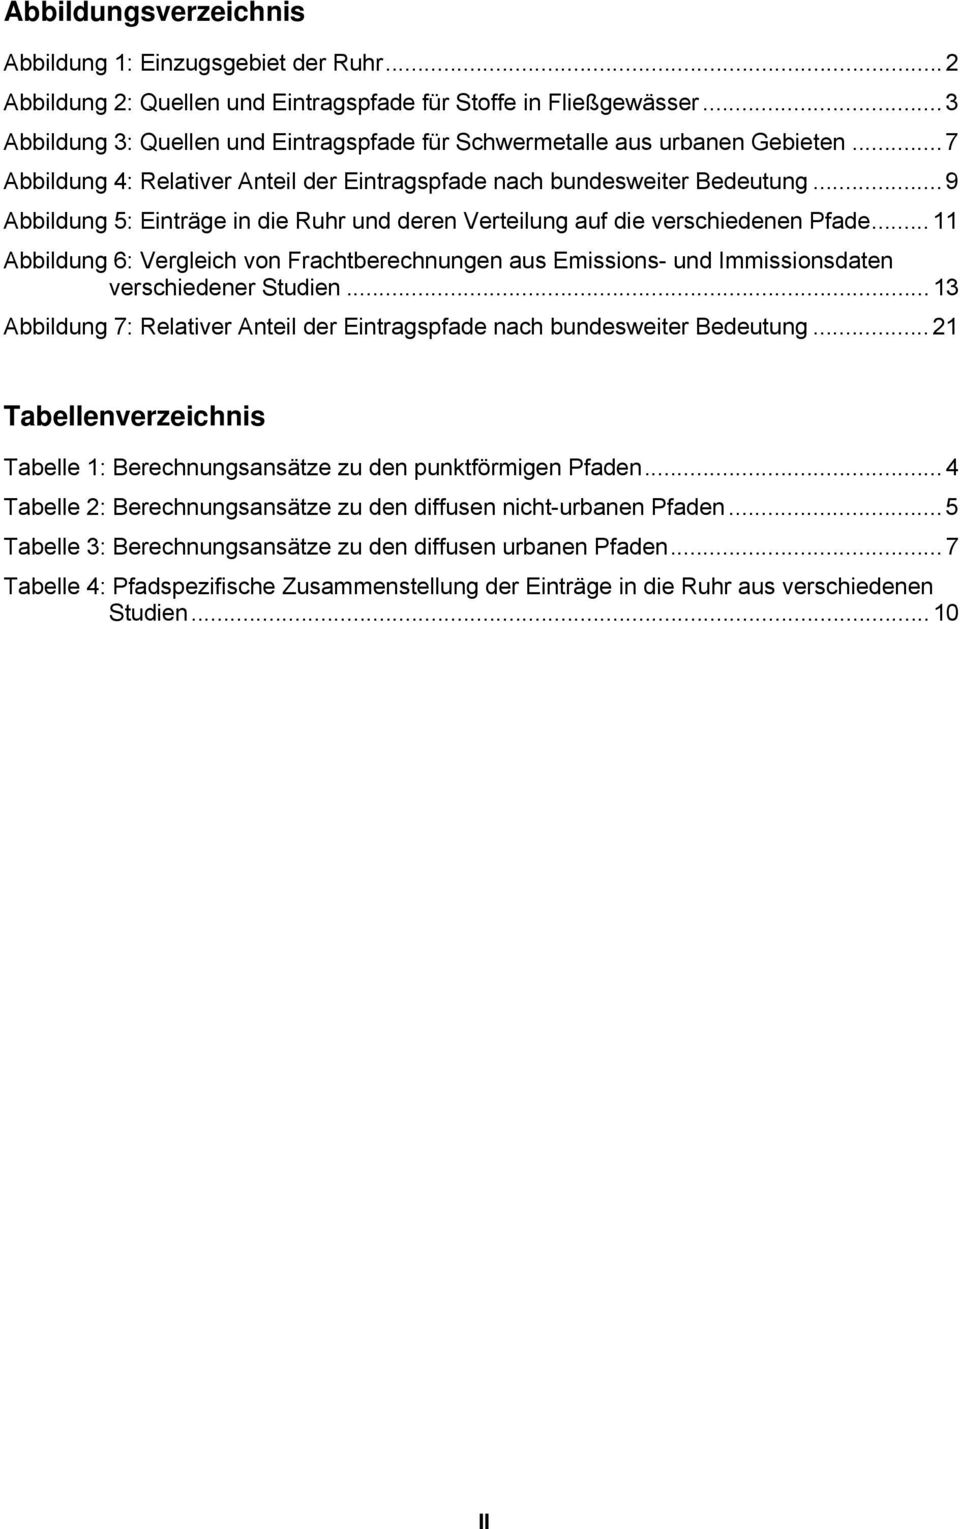 .. 9 Abbildung 5: Einträge in die Ruhr und deren Verteilung auf die verschiedenen Pfade... 11 Abbildung 6: Vergleich von Frachtberechnungen aus Emissions- und Immissionsdaten verschiedener Studien.